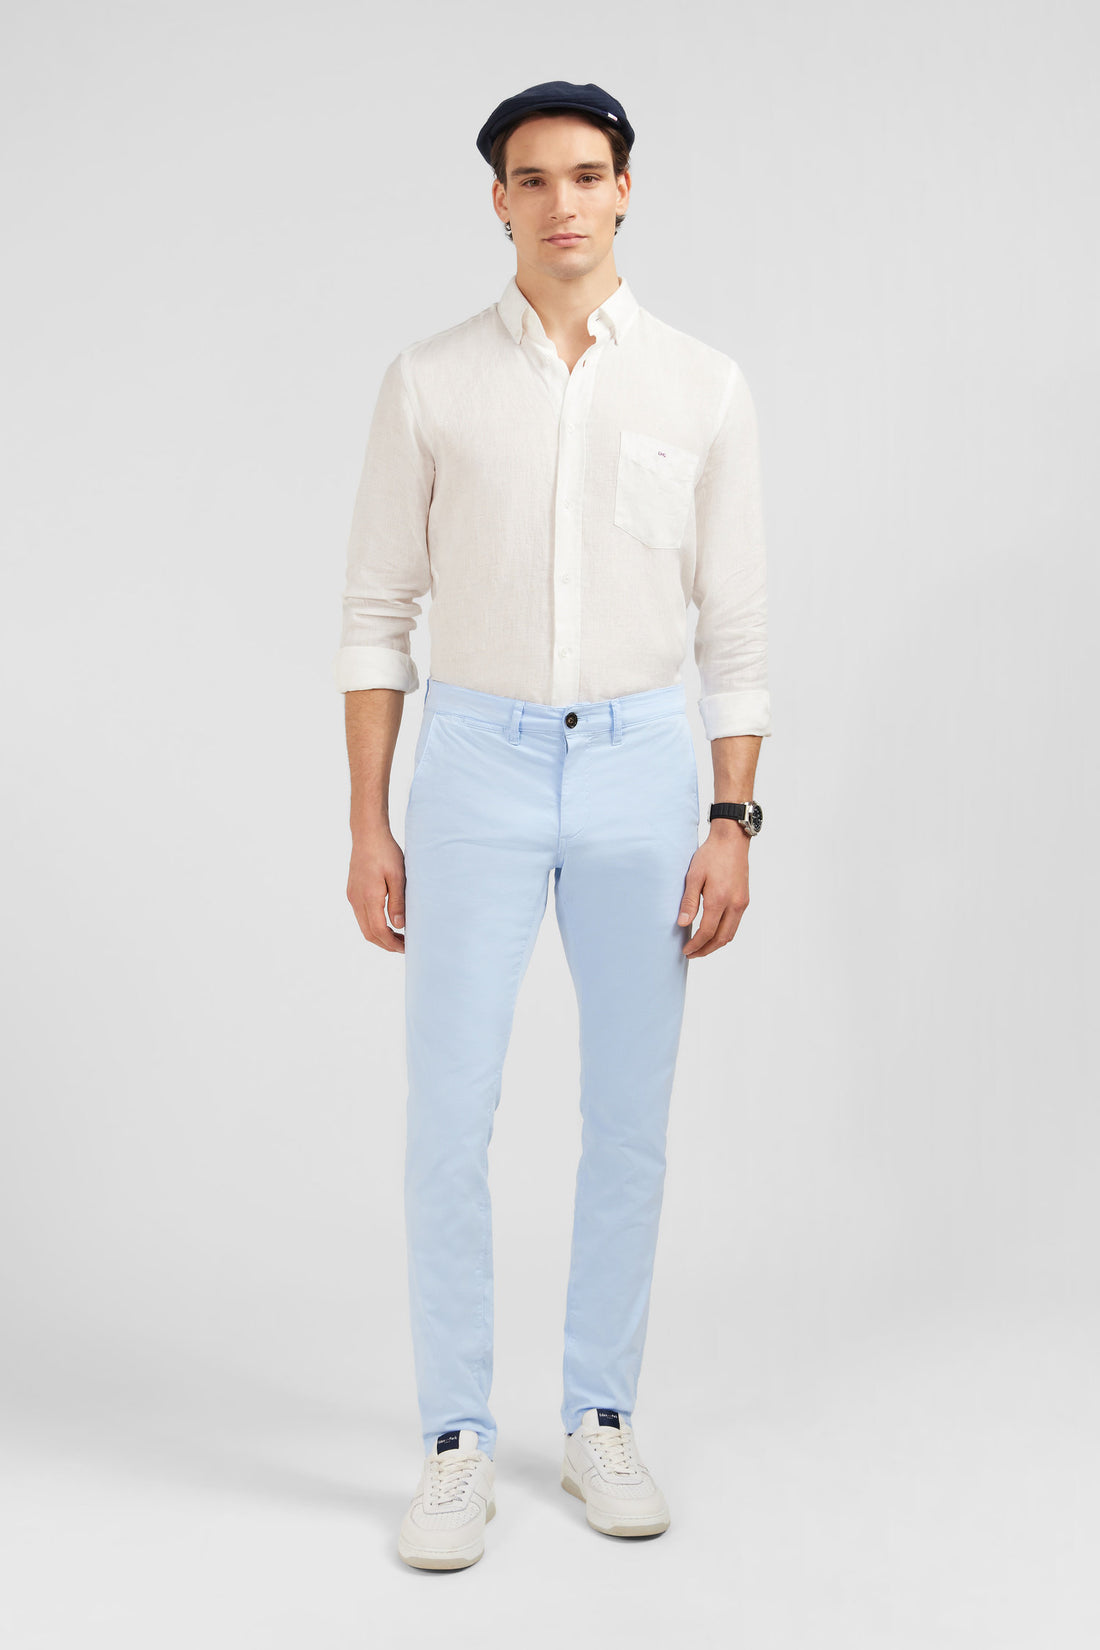 Plain White Linen Shirt_E24CHECL0005_BC_01